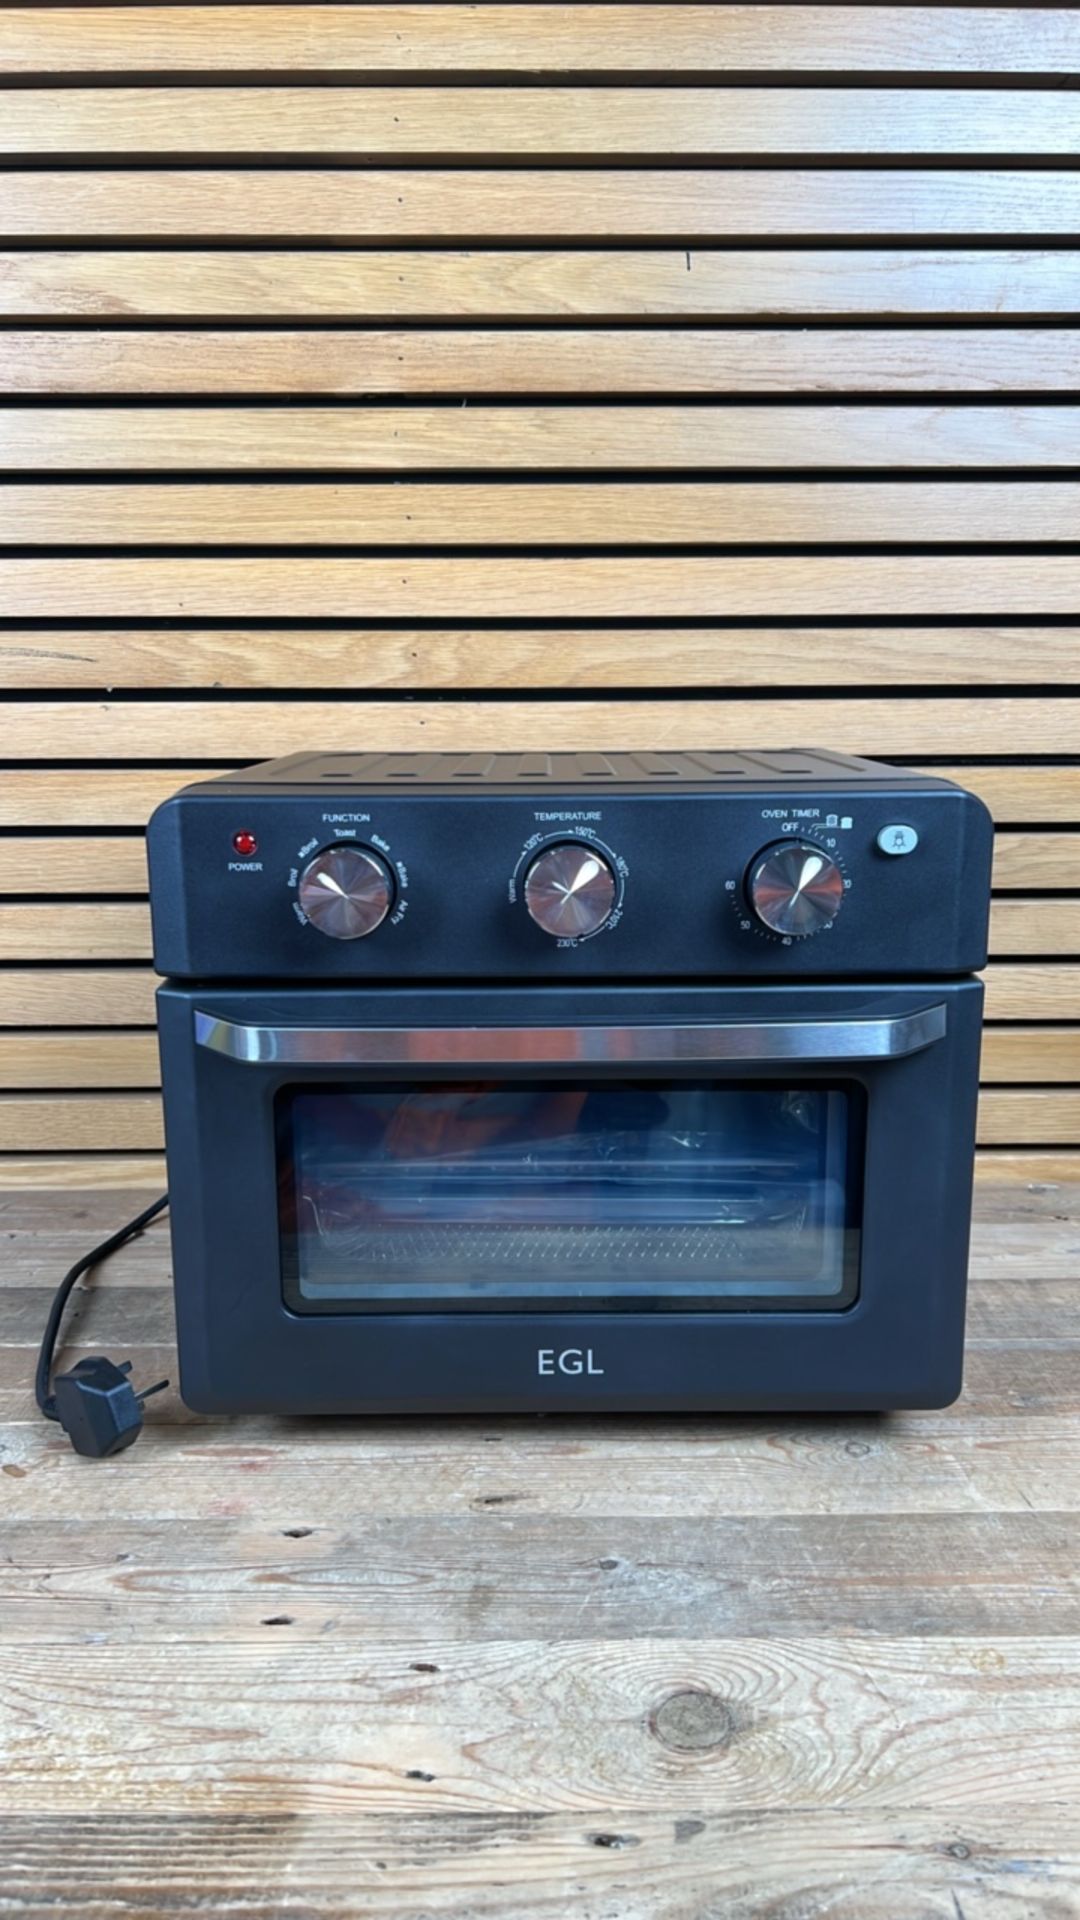 Egl 20 litre air fryer oven-black - Image 2 of 8